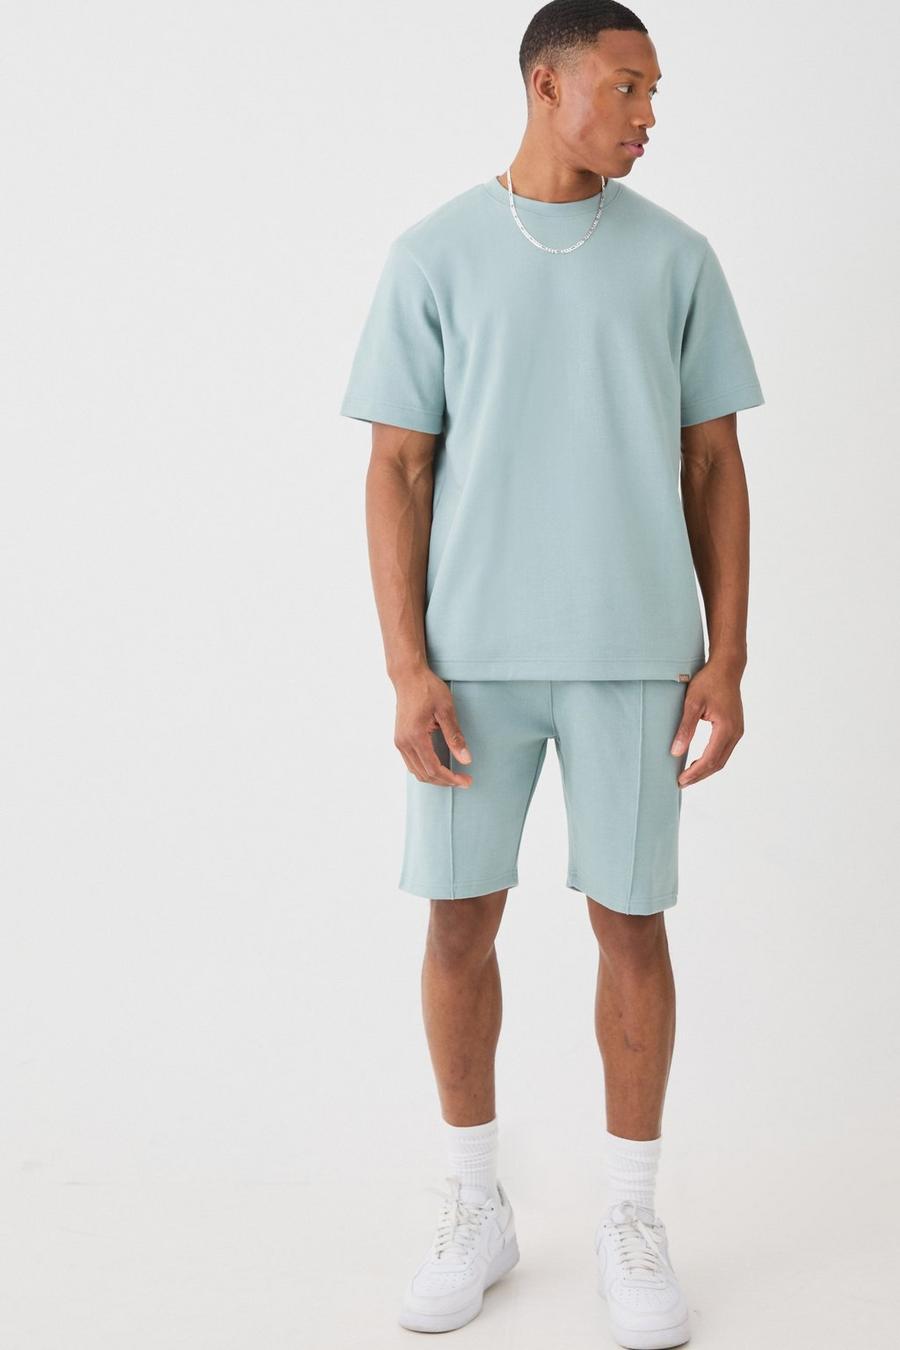 Conjunto básico de camiseta y pantalón corto entrelazados, Dusty blue